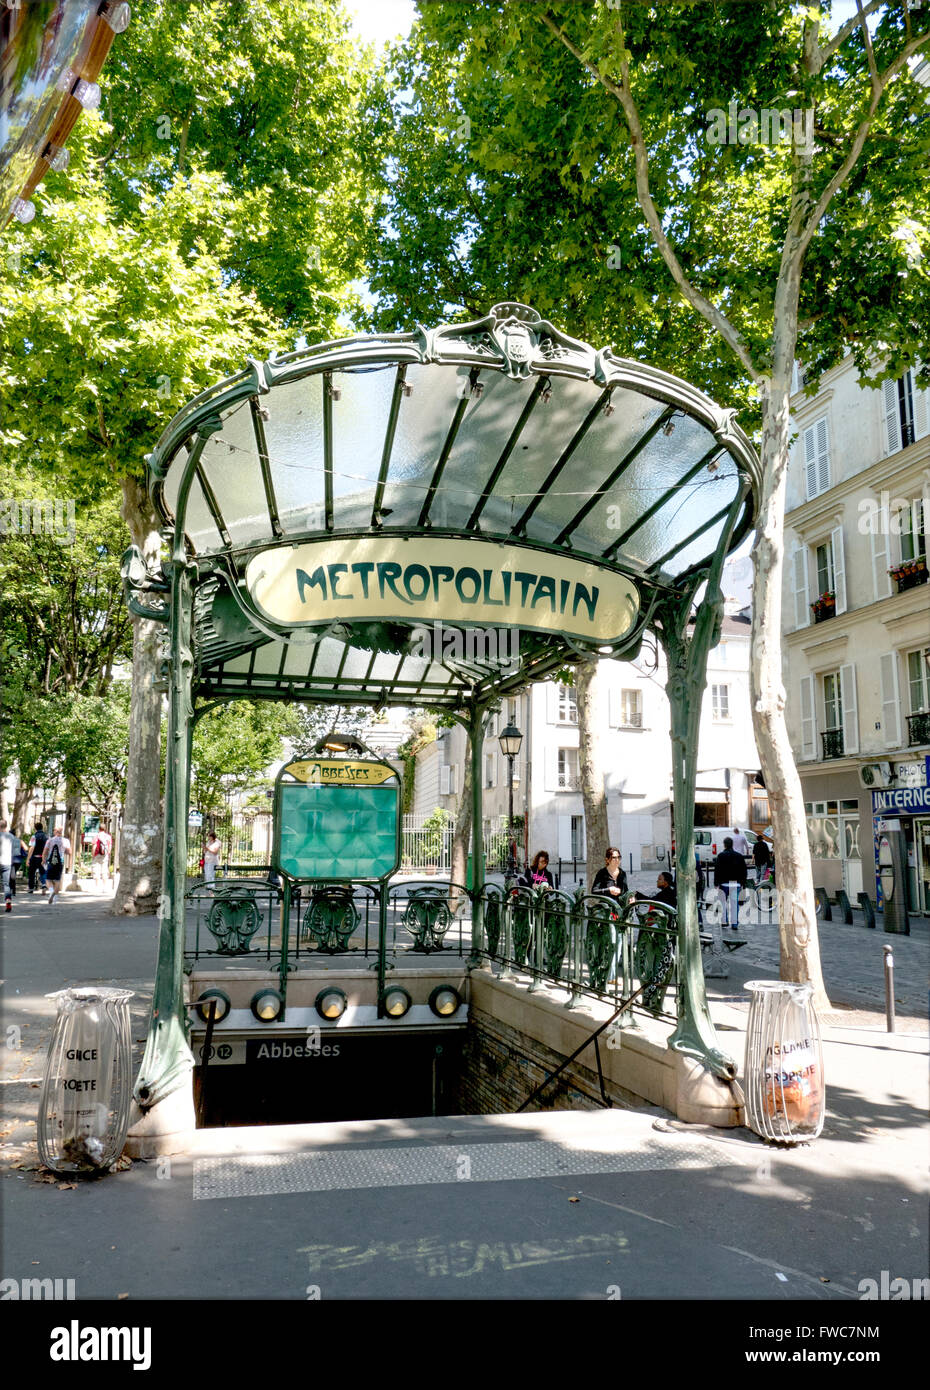 Une entrée de métro Art Nouveau à baldaquin conçu par Hector Guimard, Place des Abbesses, à Montmartre, Paris, France. Banque D'Images